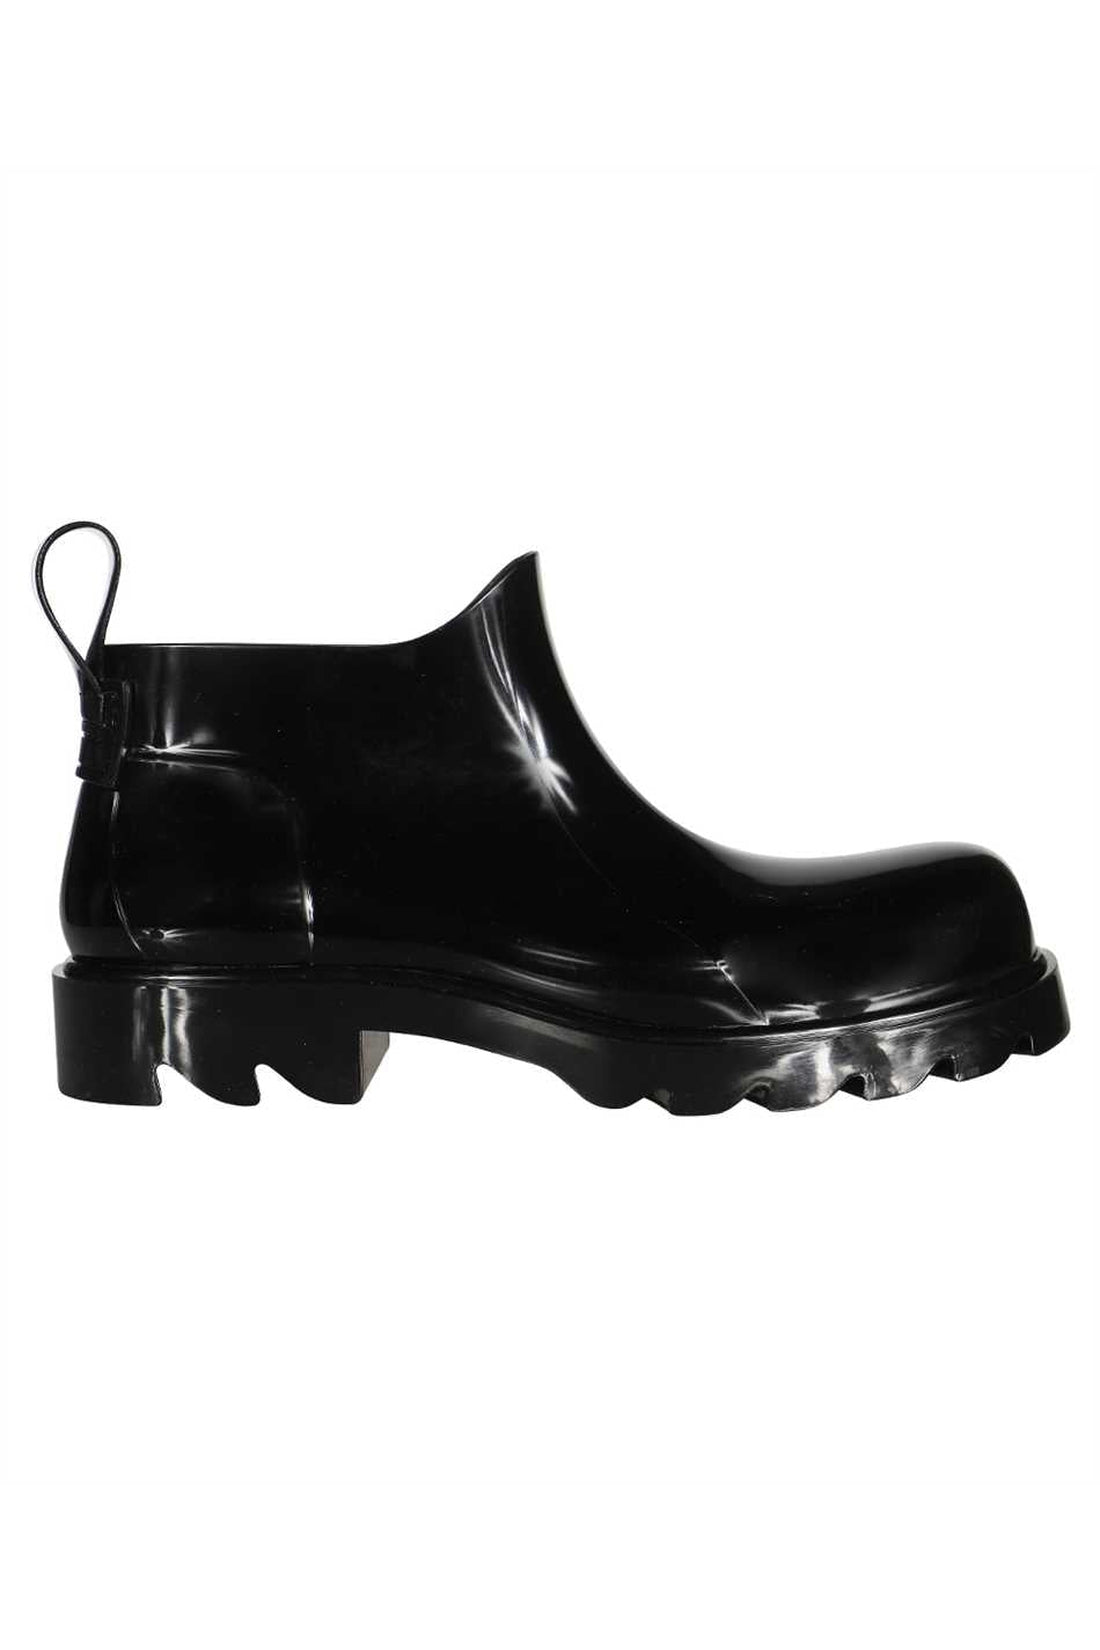 Bottega Veneta-OUTLET-SALE-Rubber boots-ARCHIVIST